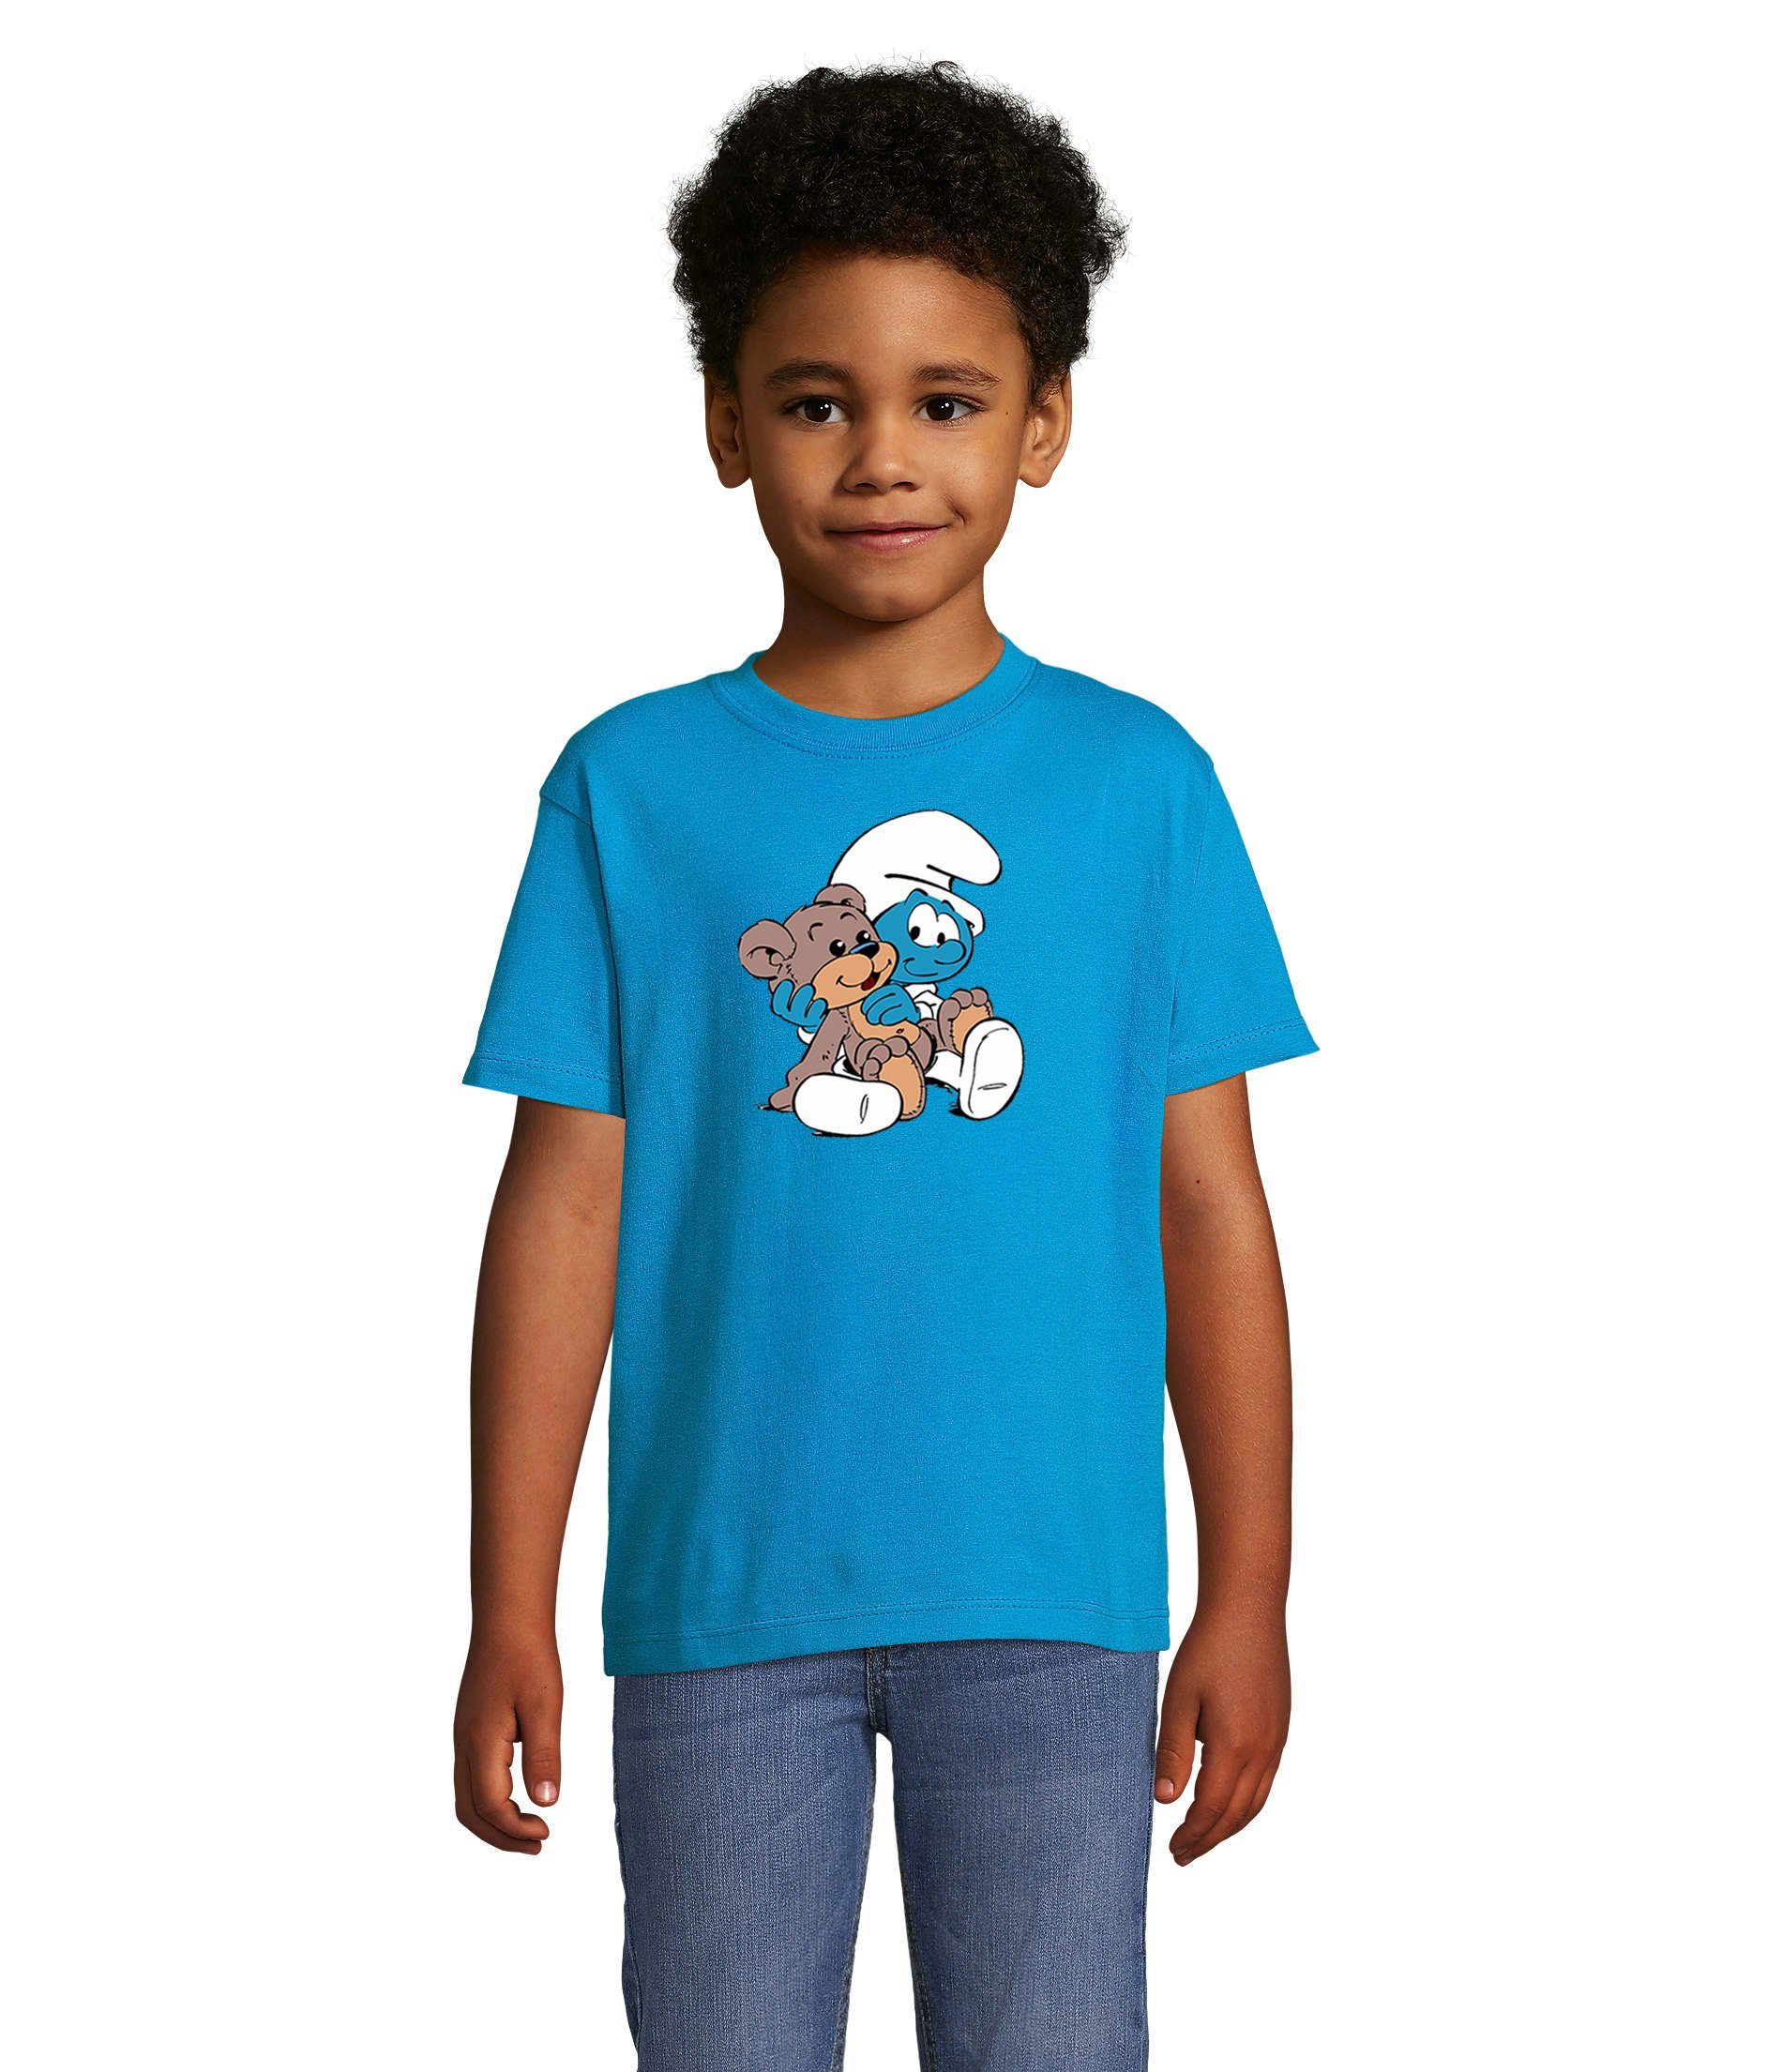 Blondie & Brownie T-Shirt Kinder Jungen & Mädchen Babyschlumpf Schlümpfe Serie Teddybär Schlumpf in vielen Farben Blau